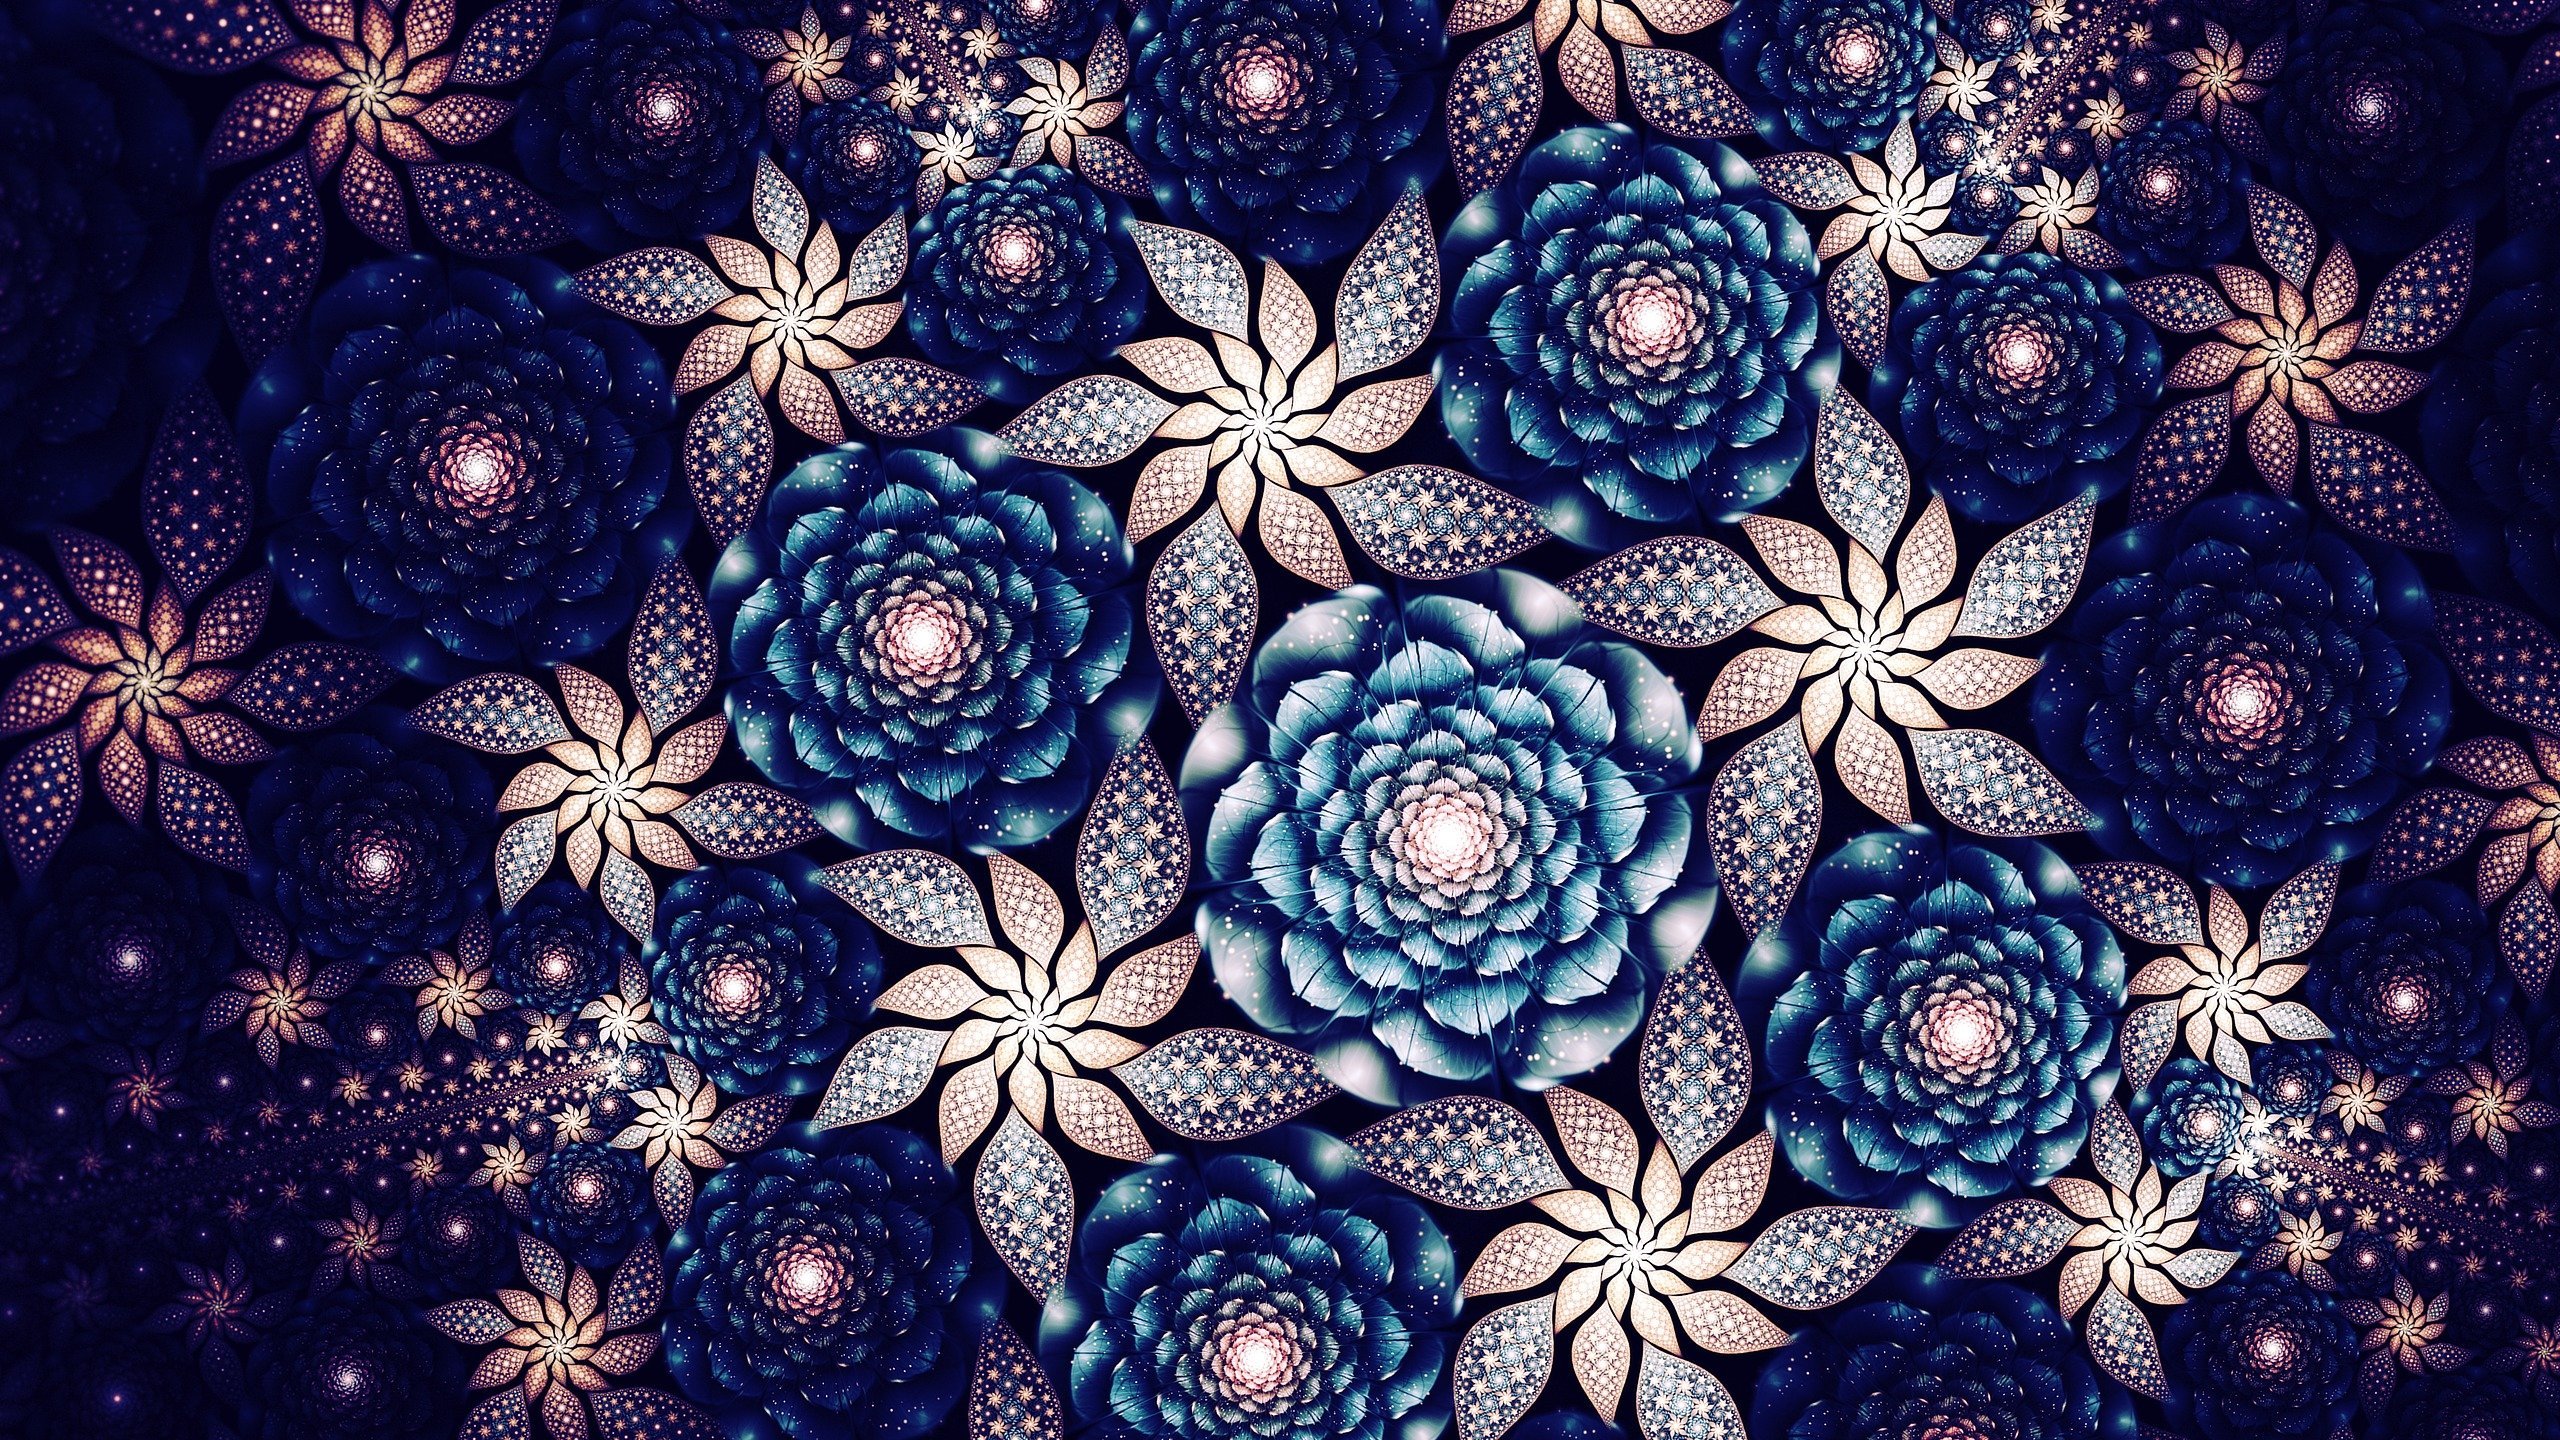 Beautiful patterns